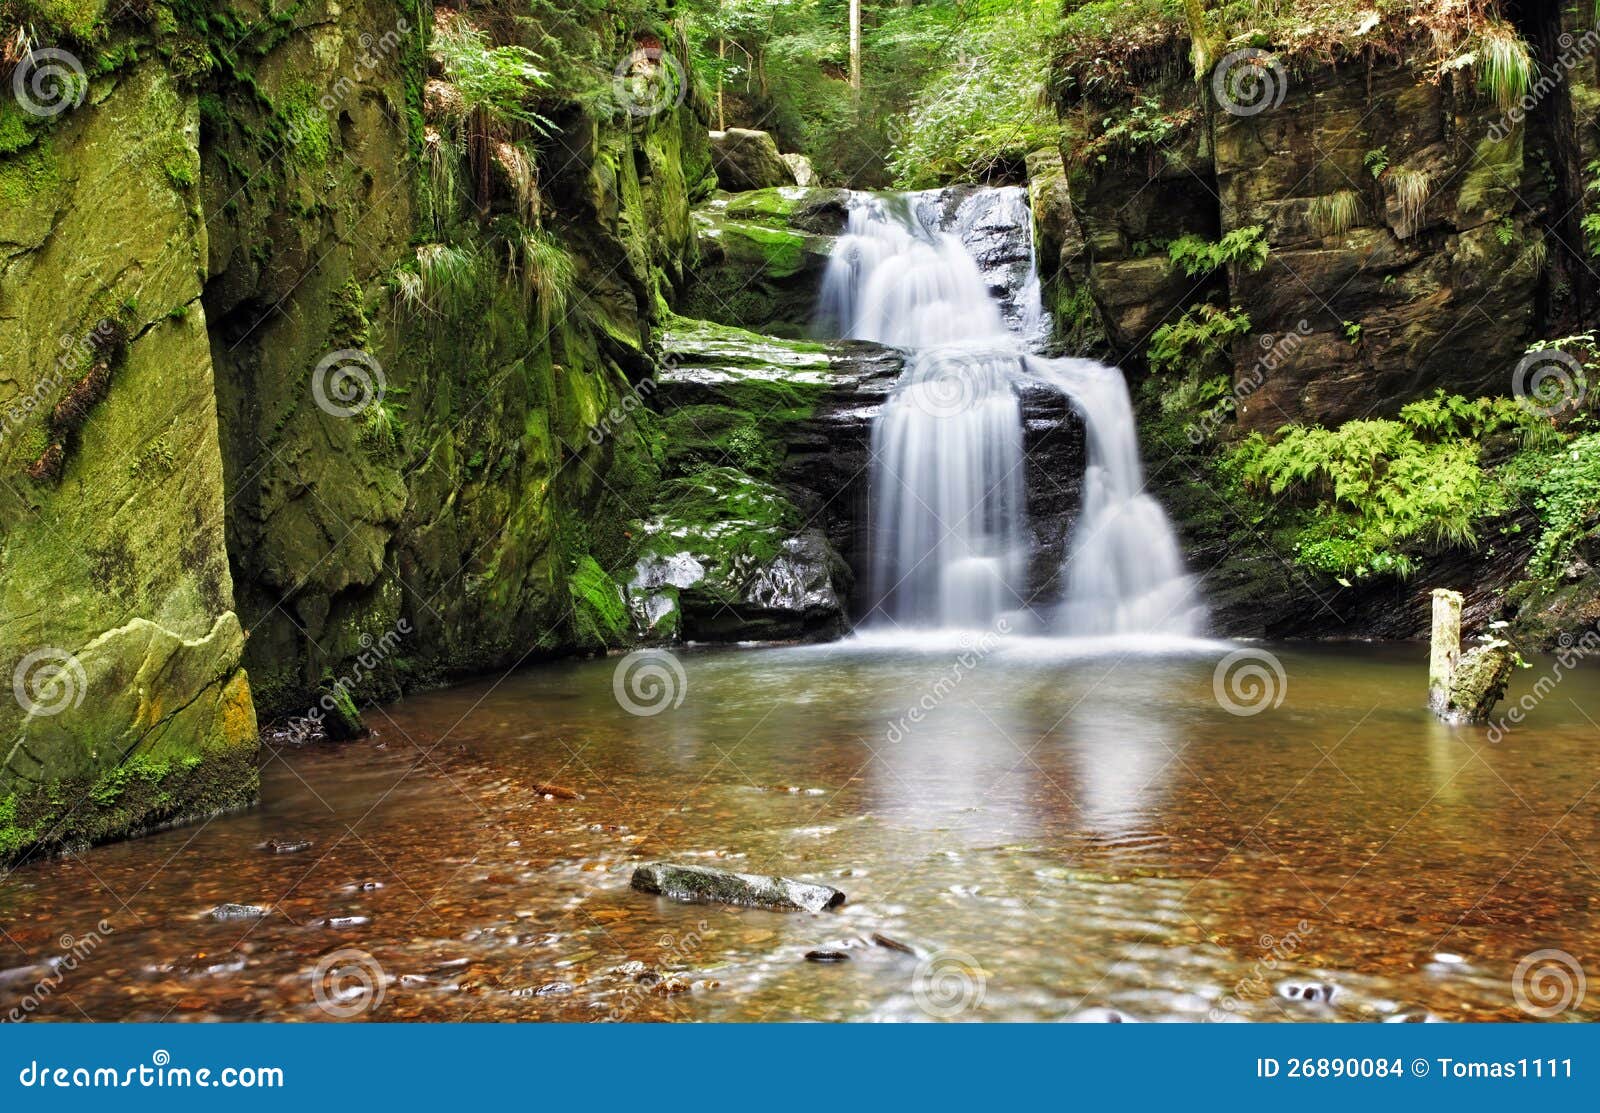 waterfall in resov in moravia, czech republic